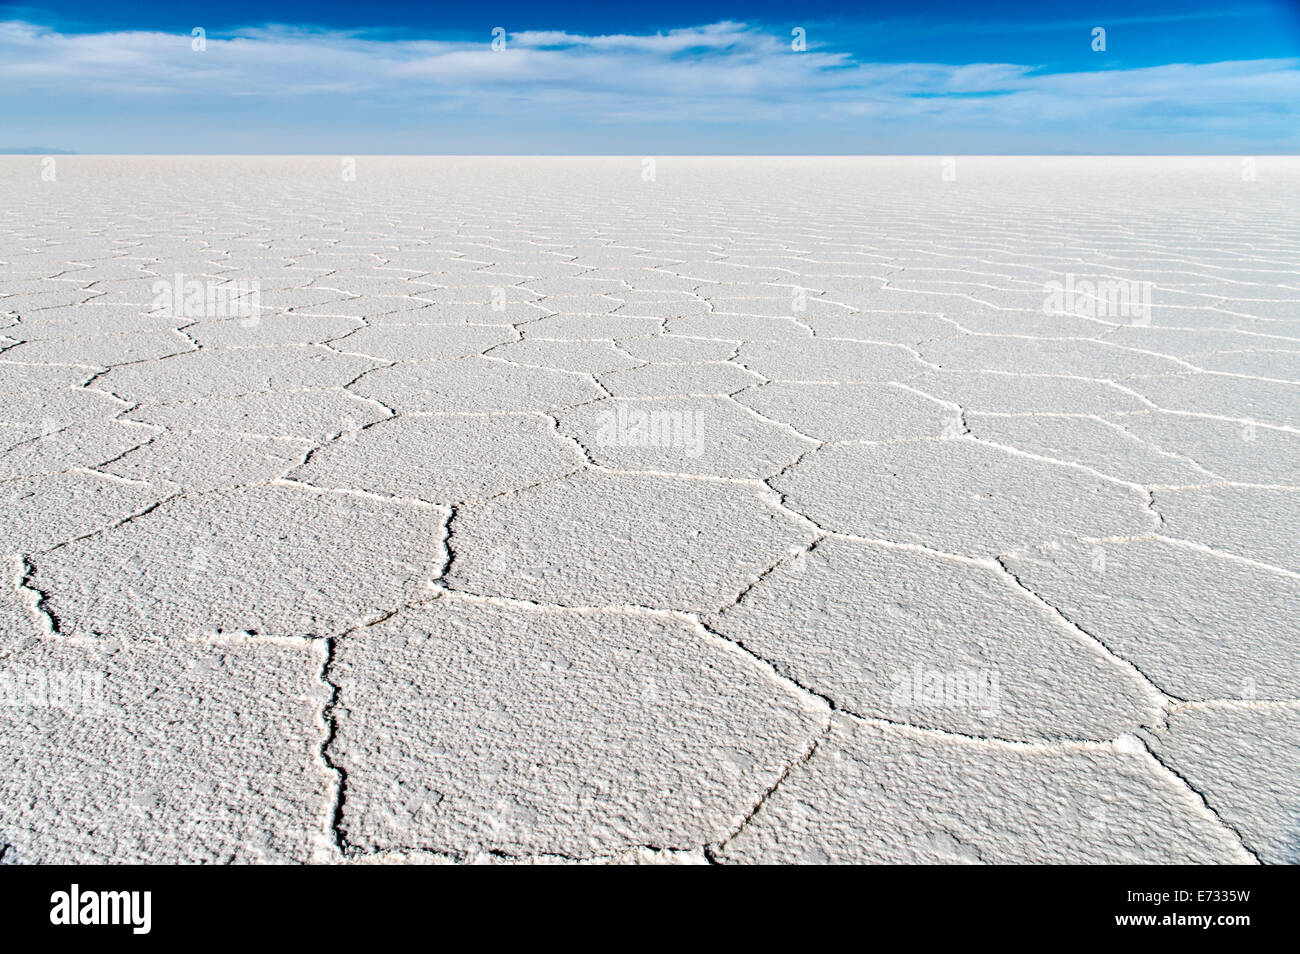 Uyuni salt flats or Salar de Uyuni (or Salar de Tunupa) in Potosi Bolivia, South America Stock Photo